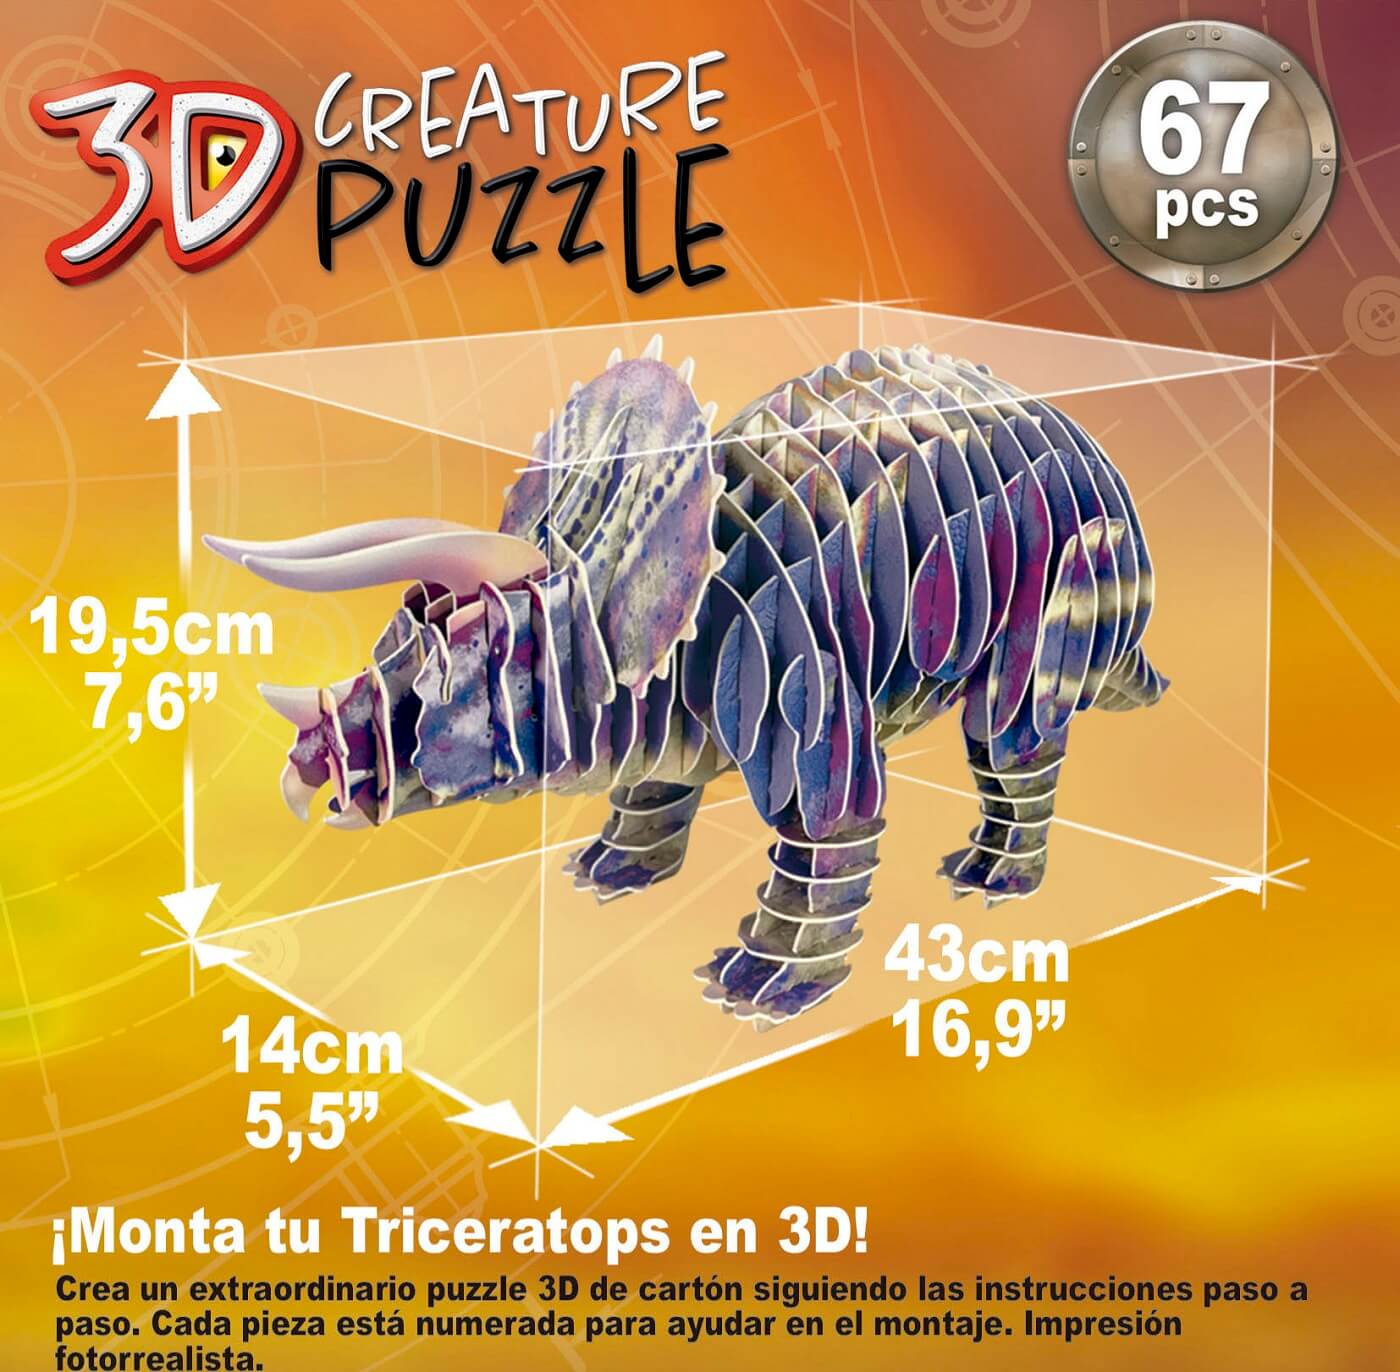 Triceratops 3D Creature Puzzle ( Educa 19183 ) imagen b